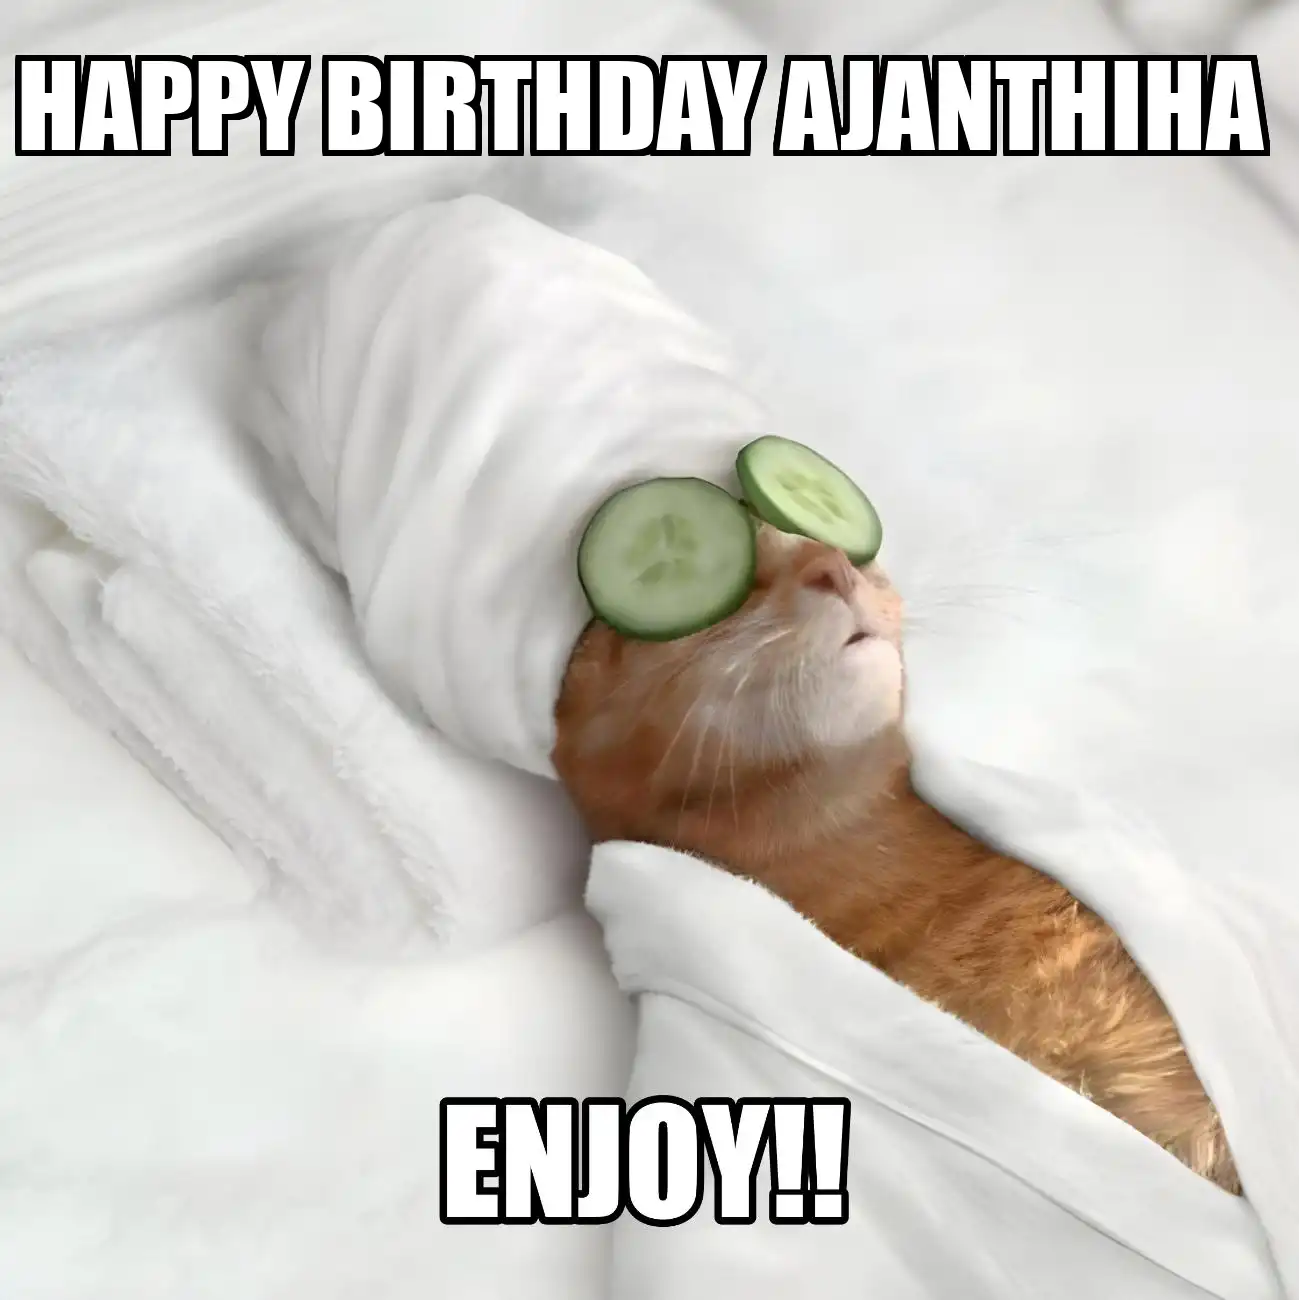 Happy Birthday Ajanthiha Enjoy Cat Meme